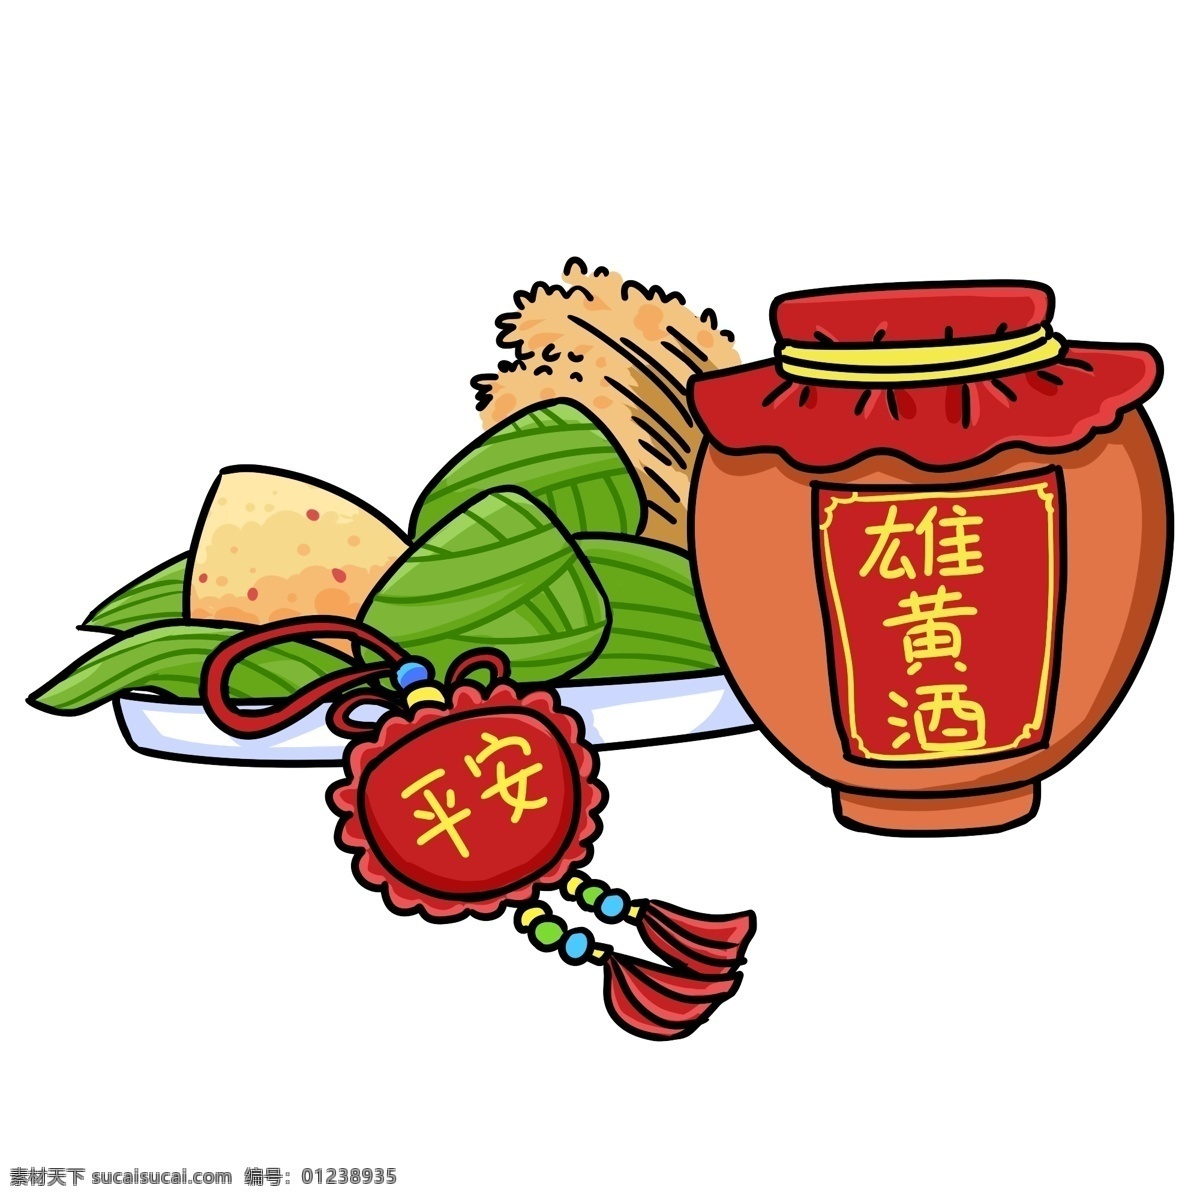 端午节 节日习俗 雄黄酒 粽子 传统习俗